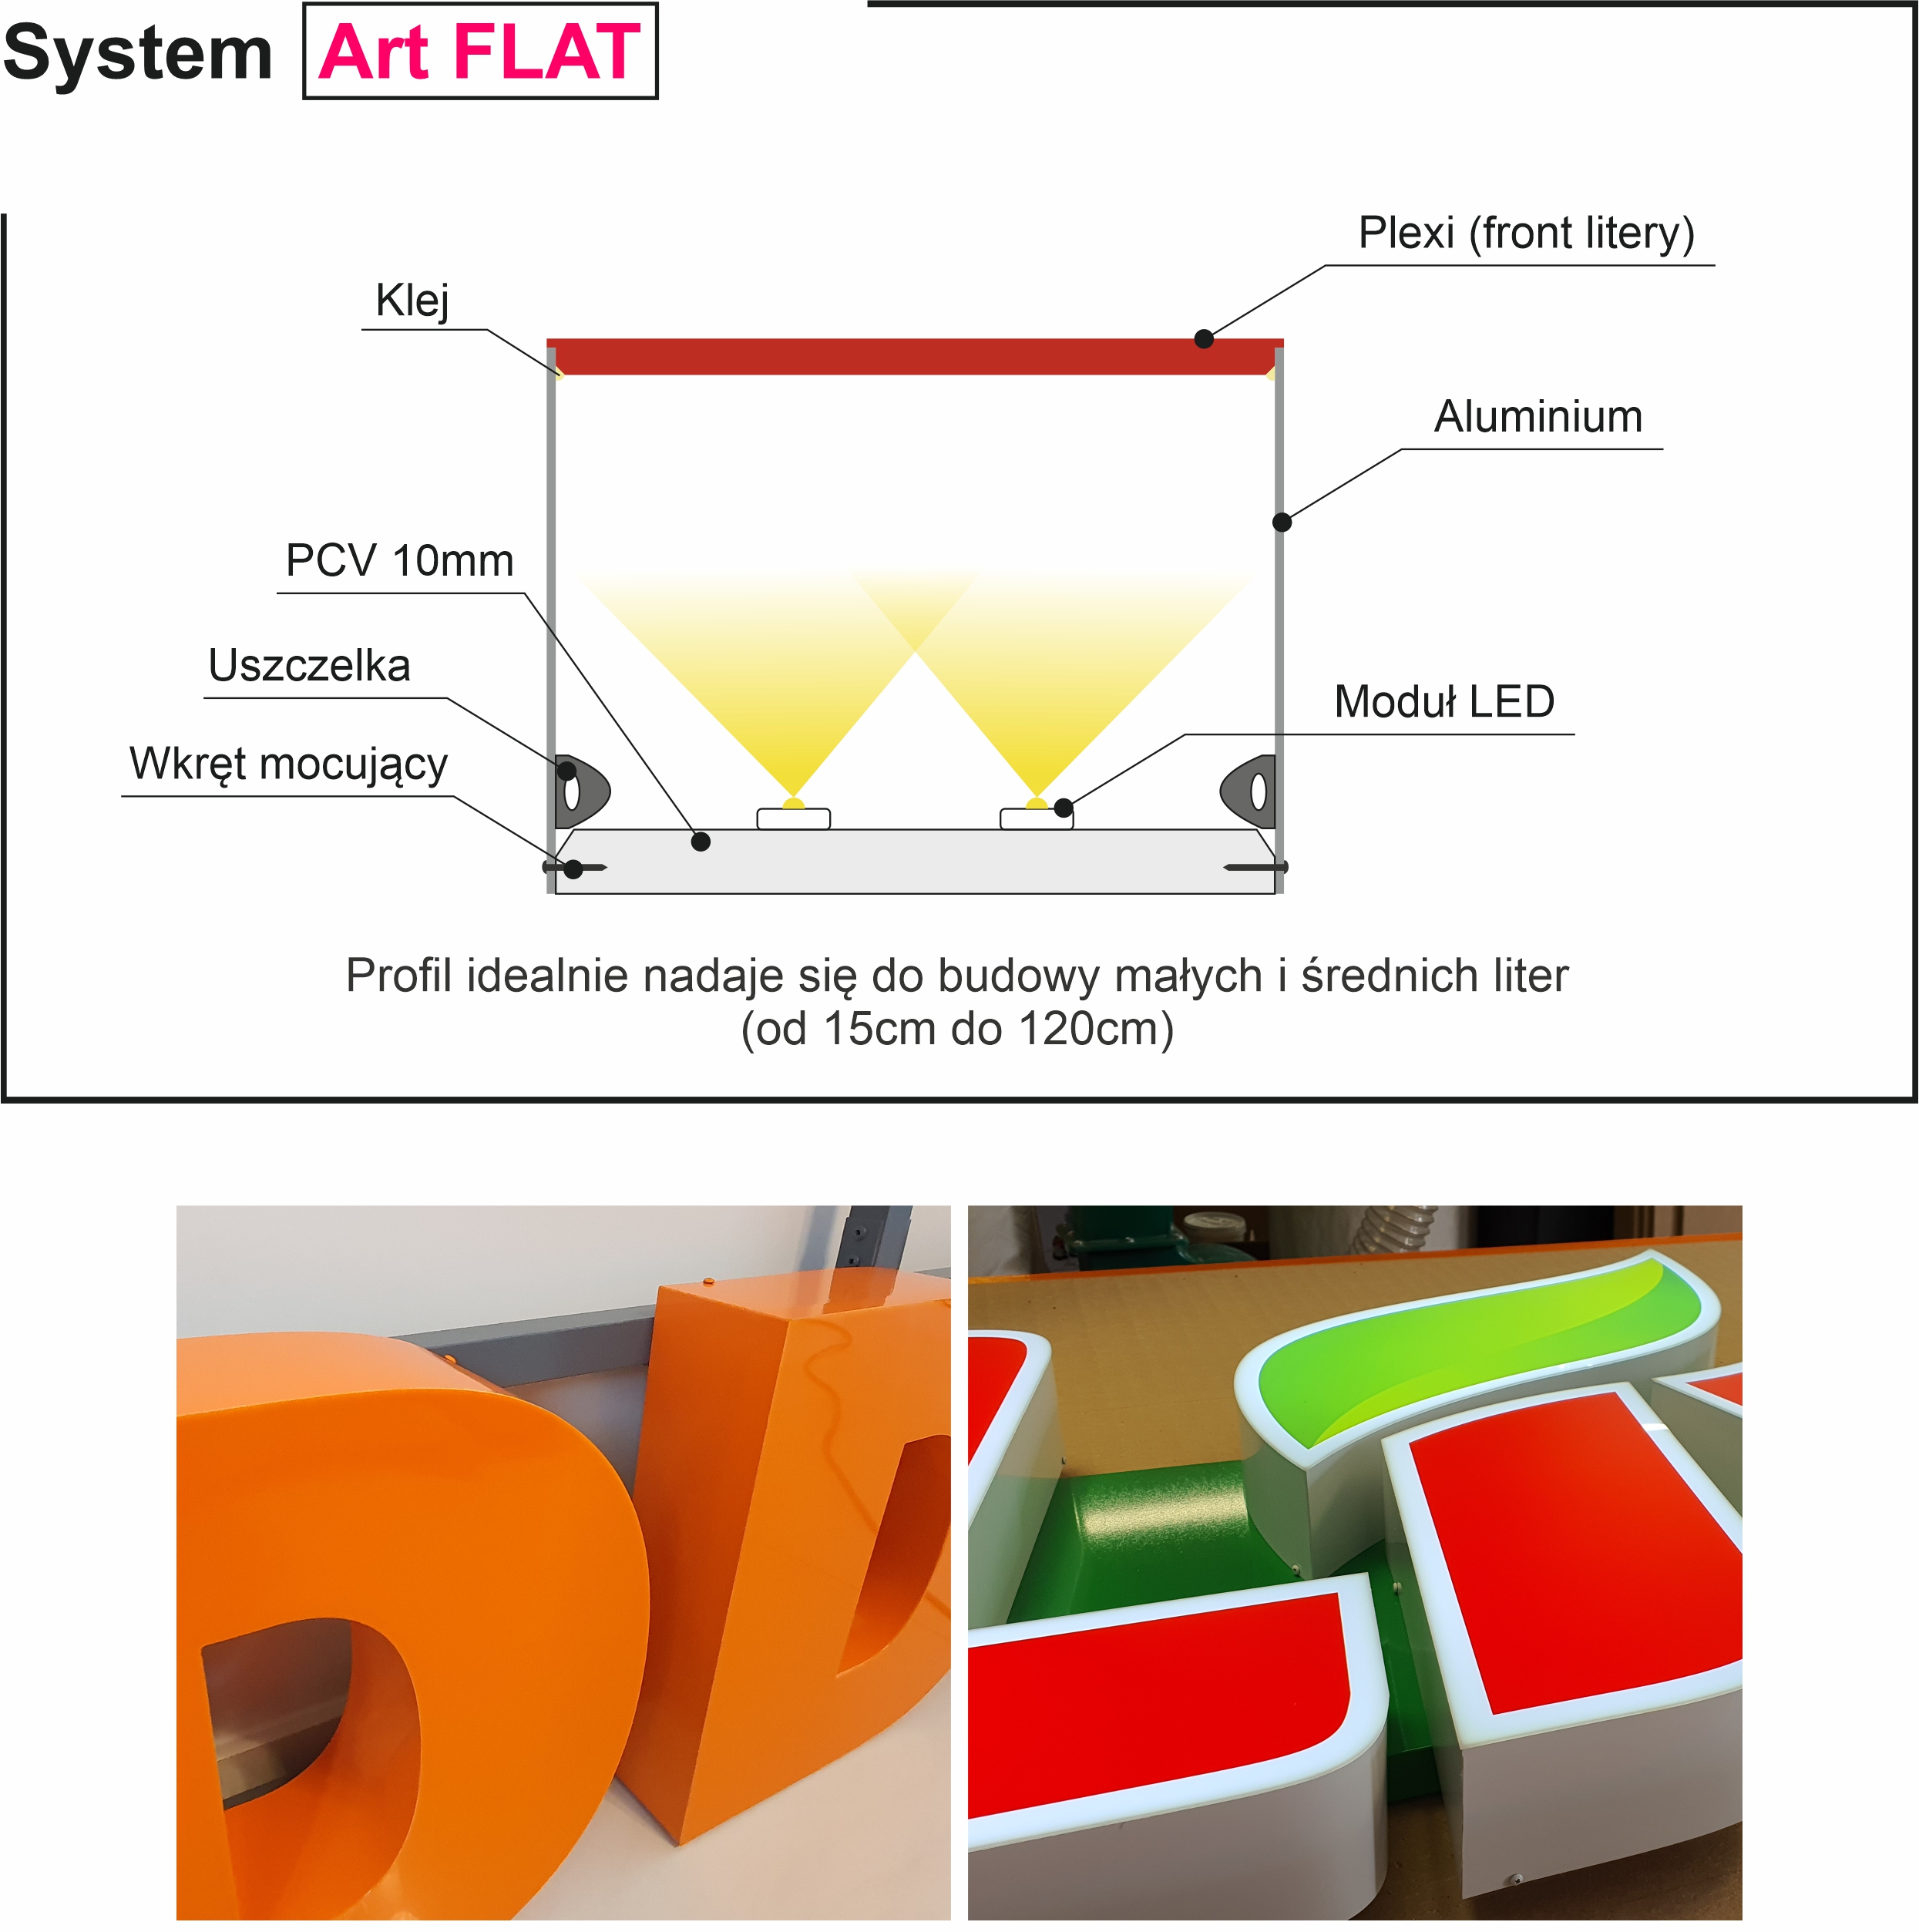 Litery 3D przestrzenne, Schemat budowy litery blokowej świecącej. System Art FLAT